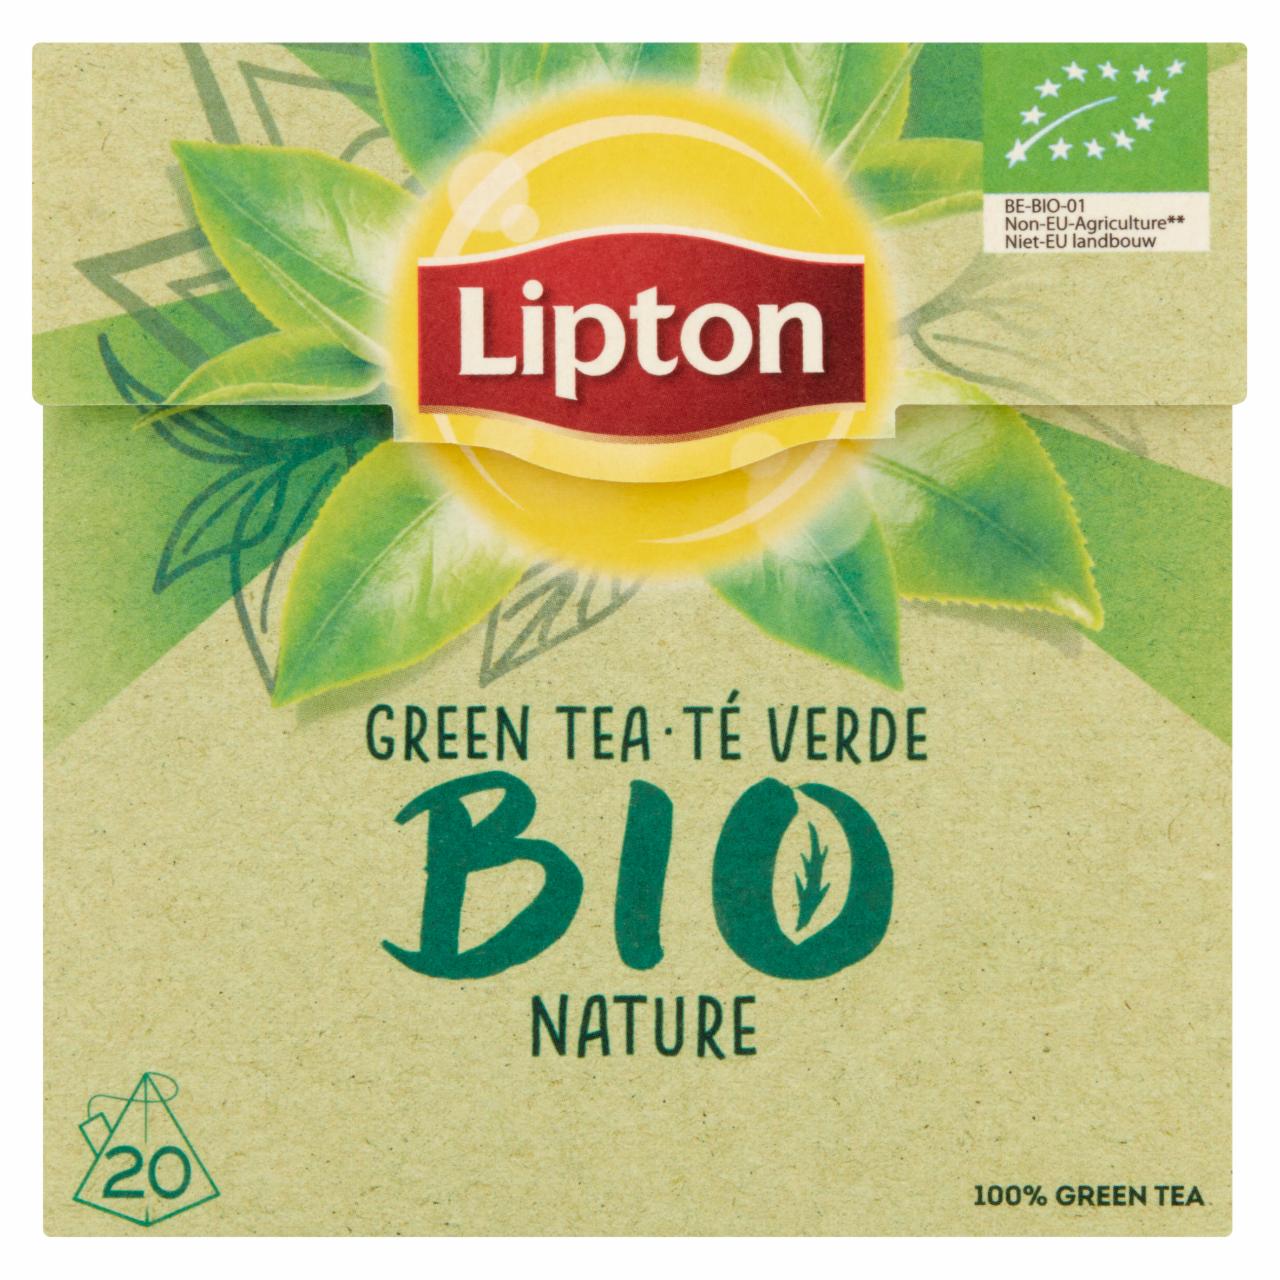 Zdjęcia - Lipton Bio Organiczna herbata zielona 28 g (20 torebek)